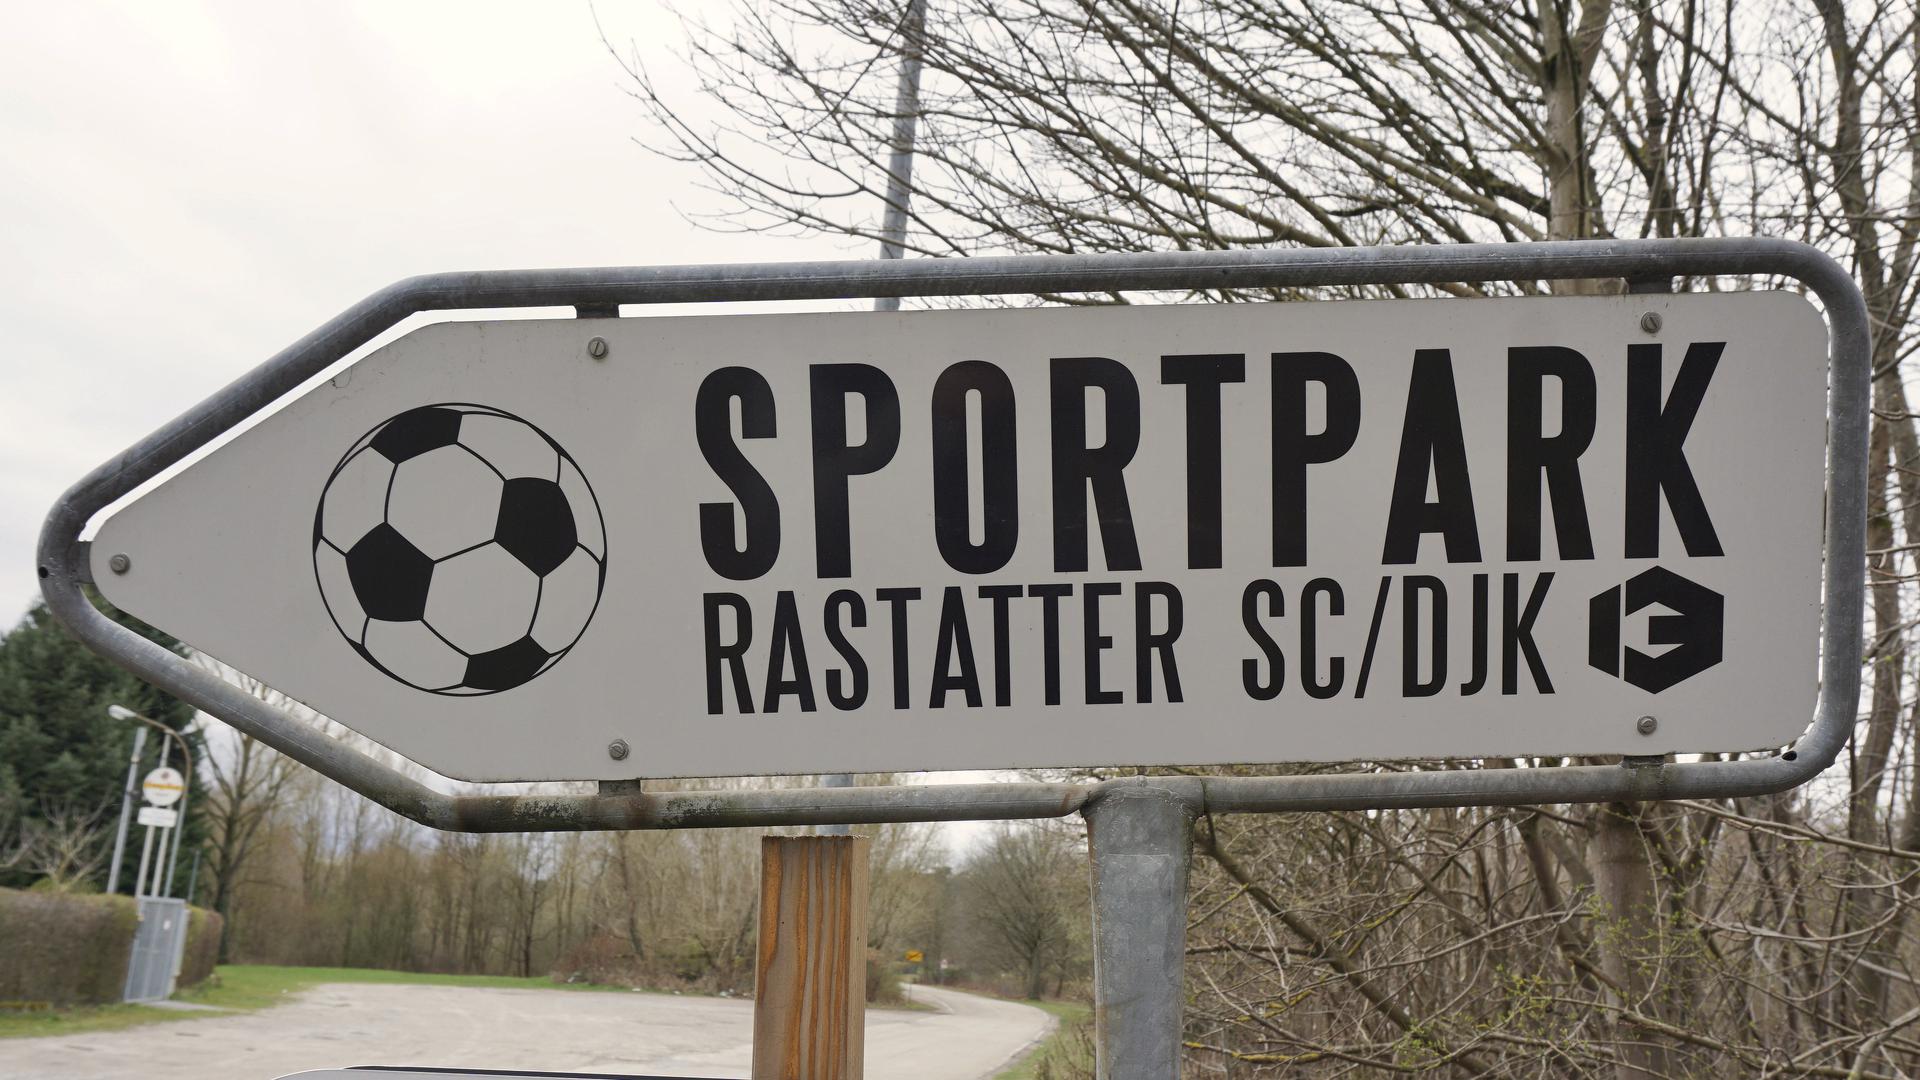 Sportpark des Fußball-Bezirksligist Rastatter SC/DJK.